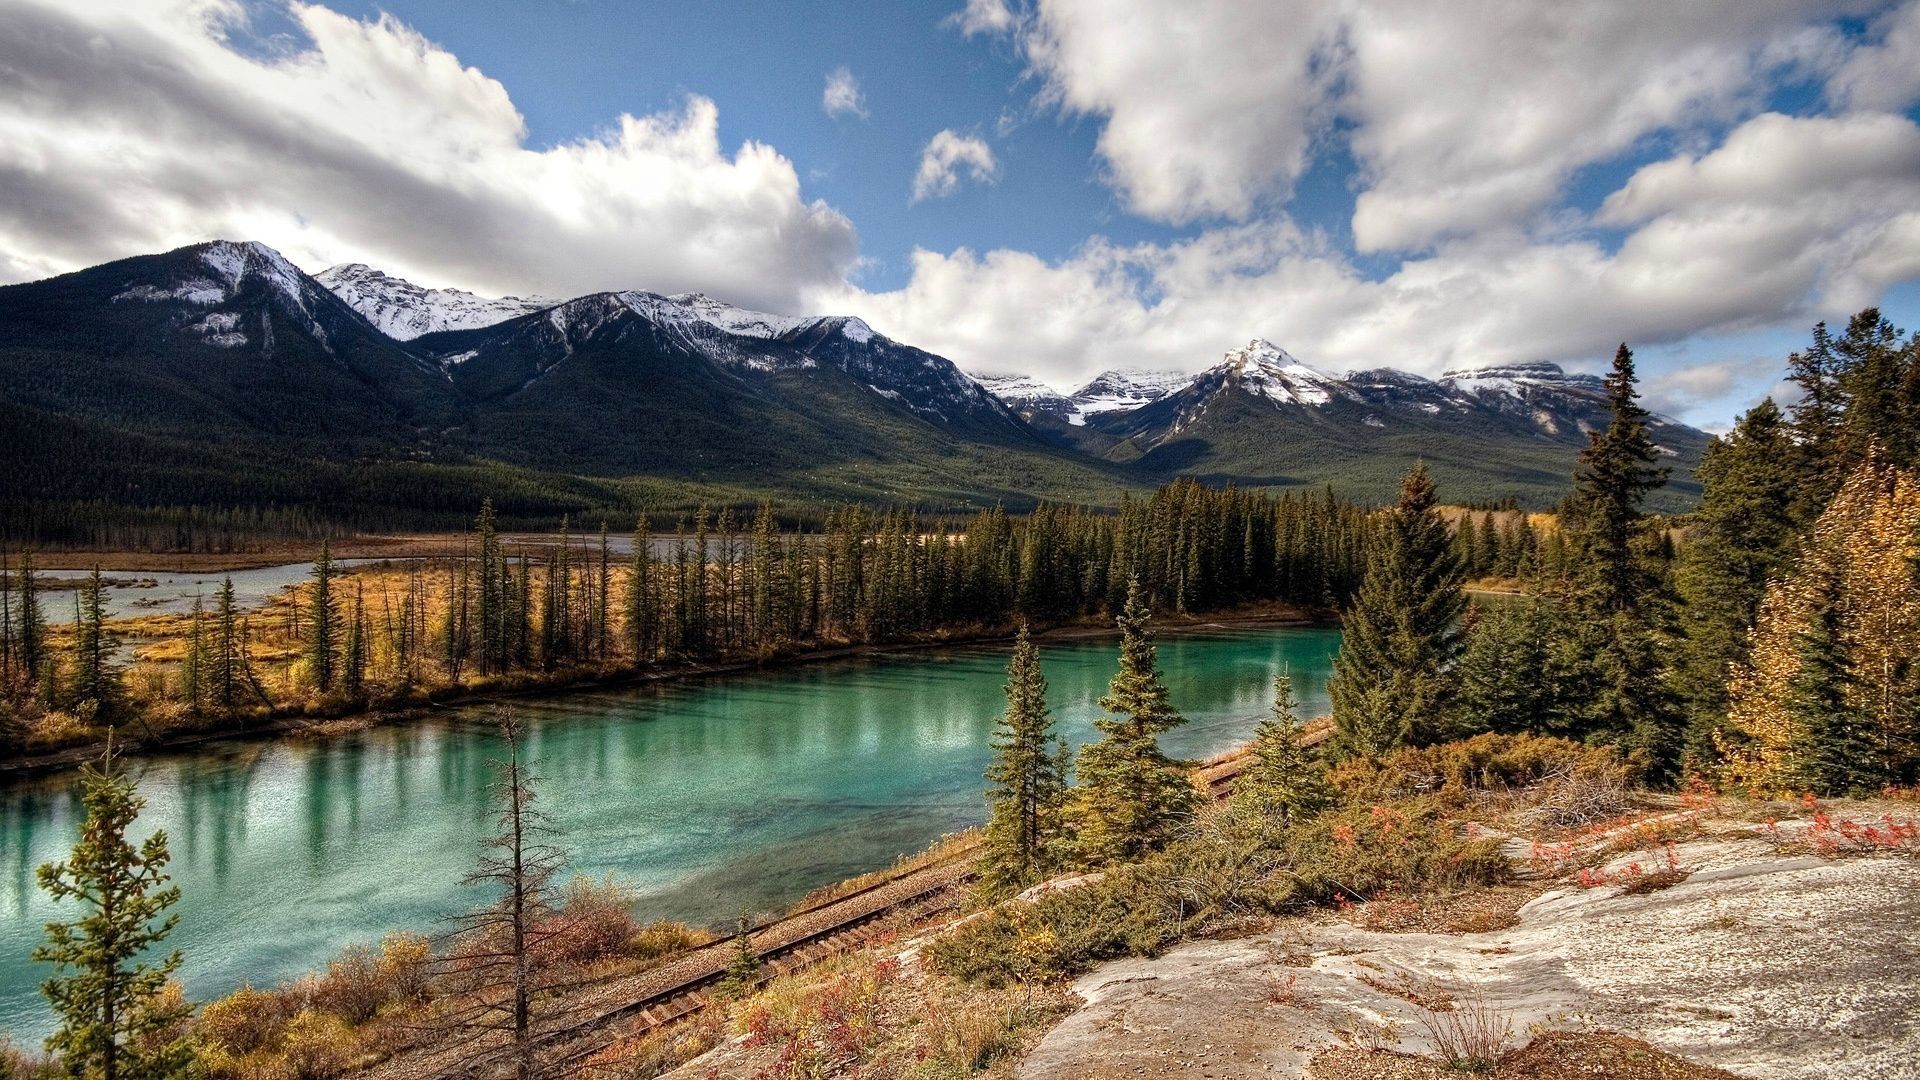 دانلود عکس زیبا و دیدنی از طبیعت کانادا